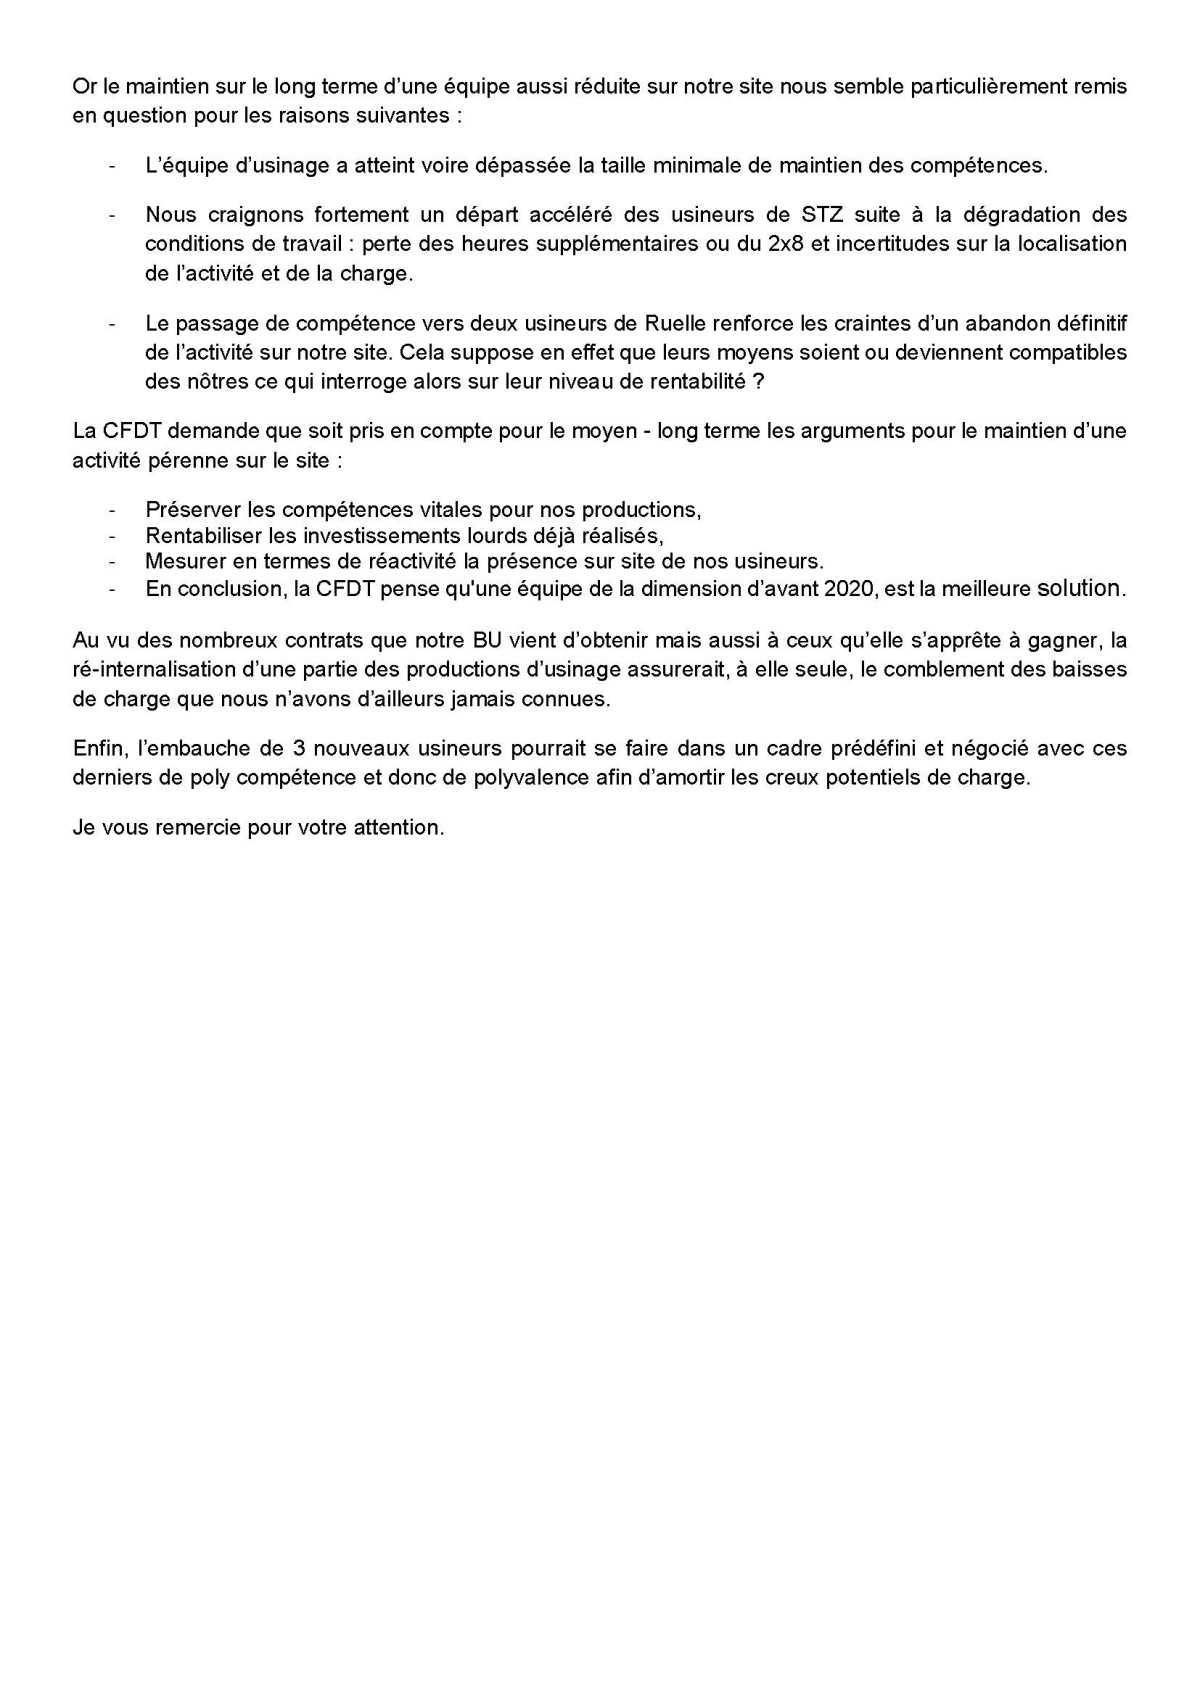 Déclaration Liminaire au CSE du 10 mai 2022 : Organisation usinage